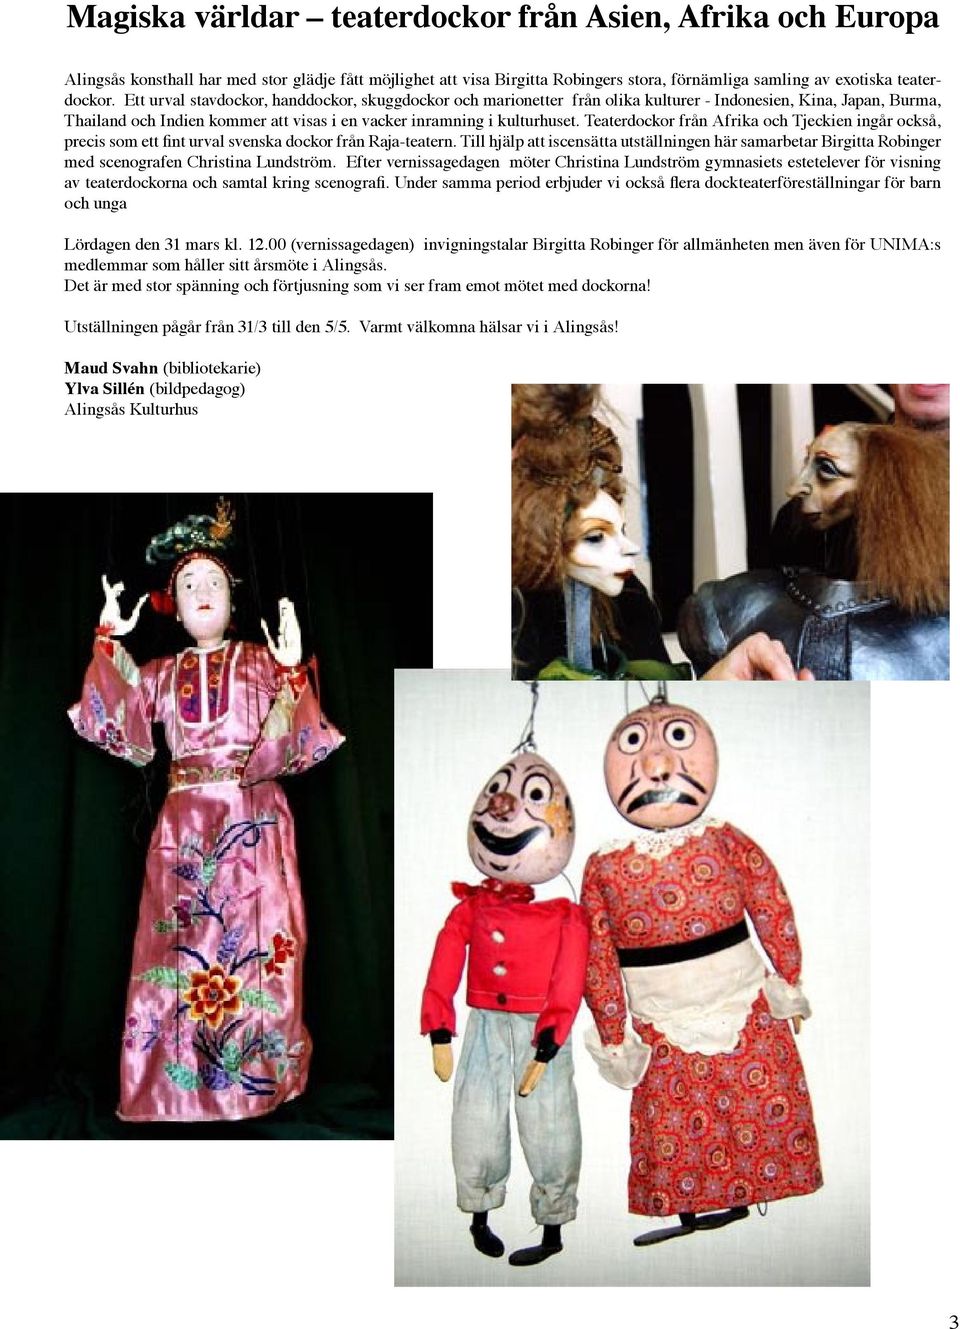 Teaterdockor från Afrika och Tjeckien ingår också, precis som ett fint urval svenska dockor från Raja-teatern.